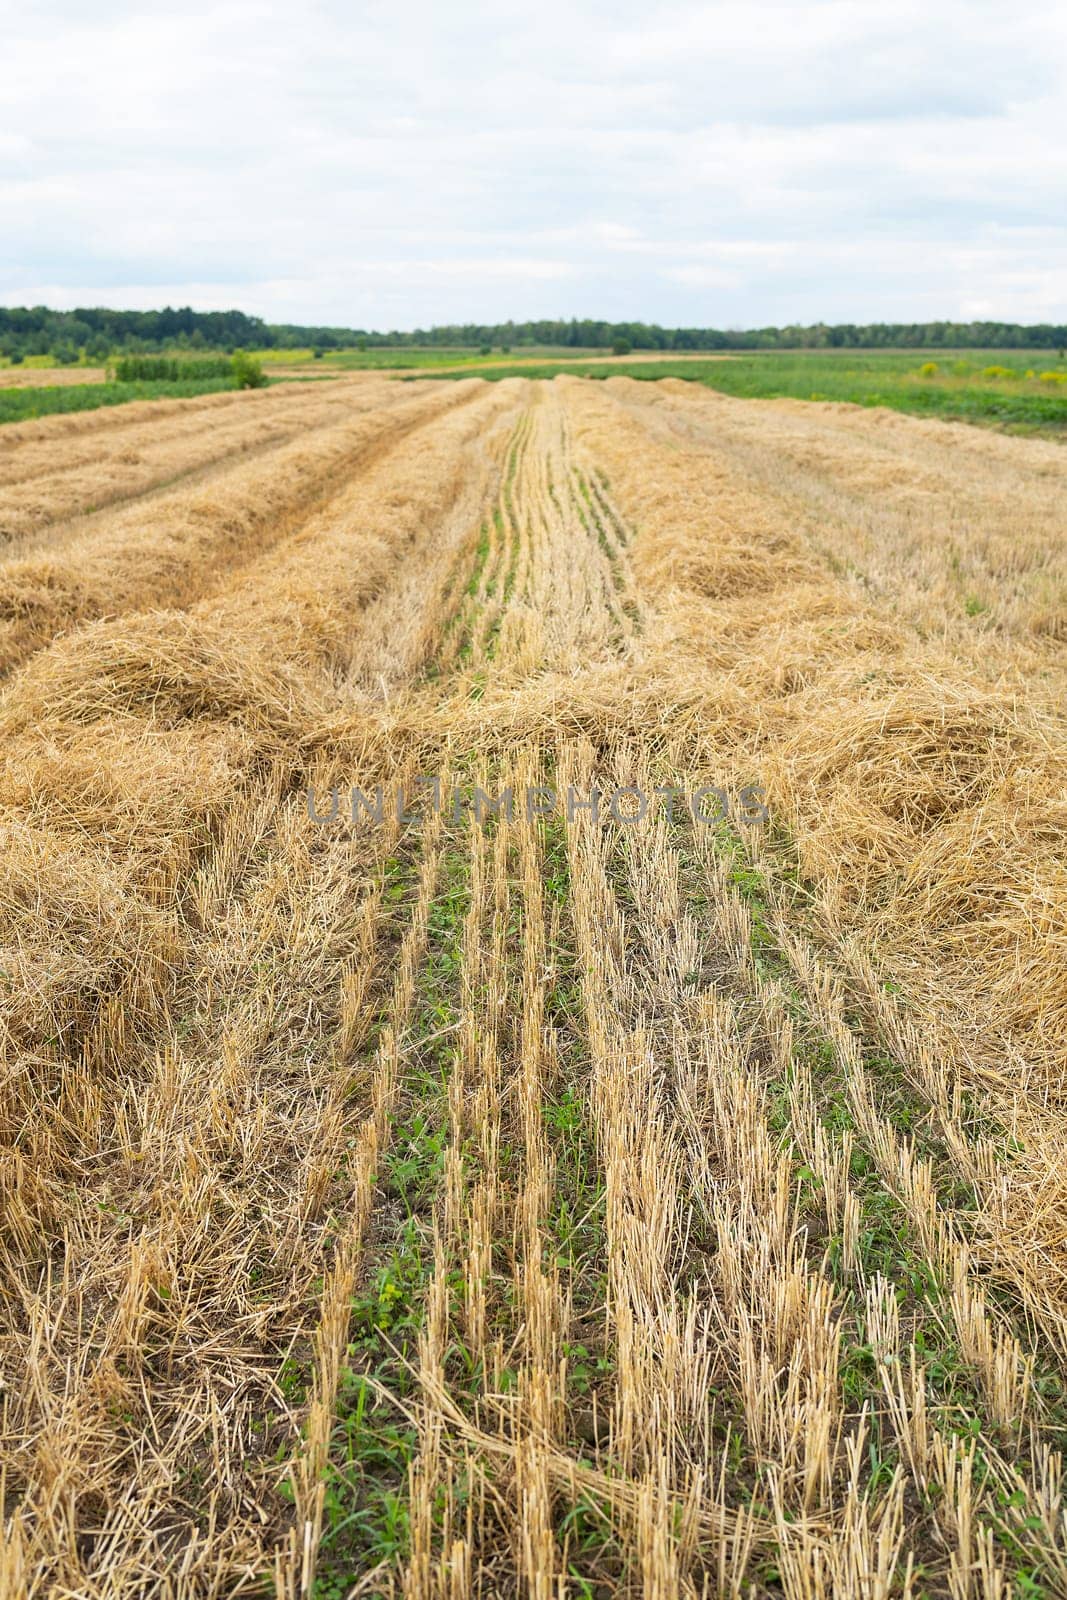 wheat field after harvest, mowed field, empty field with straw after harvest, seasonal farm work. by sfinks